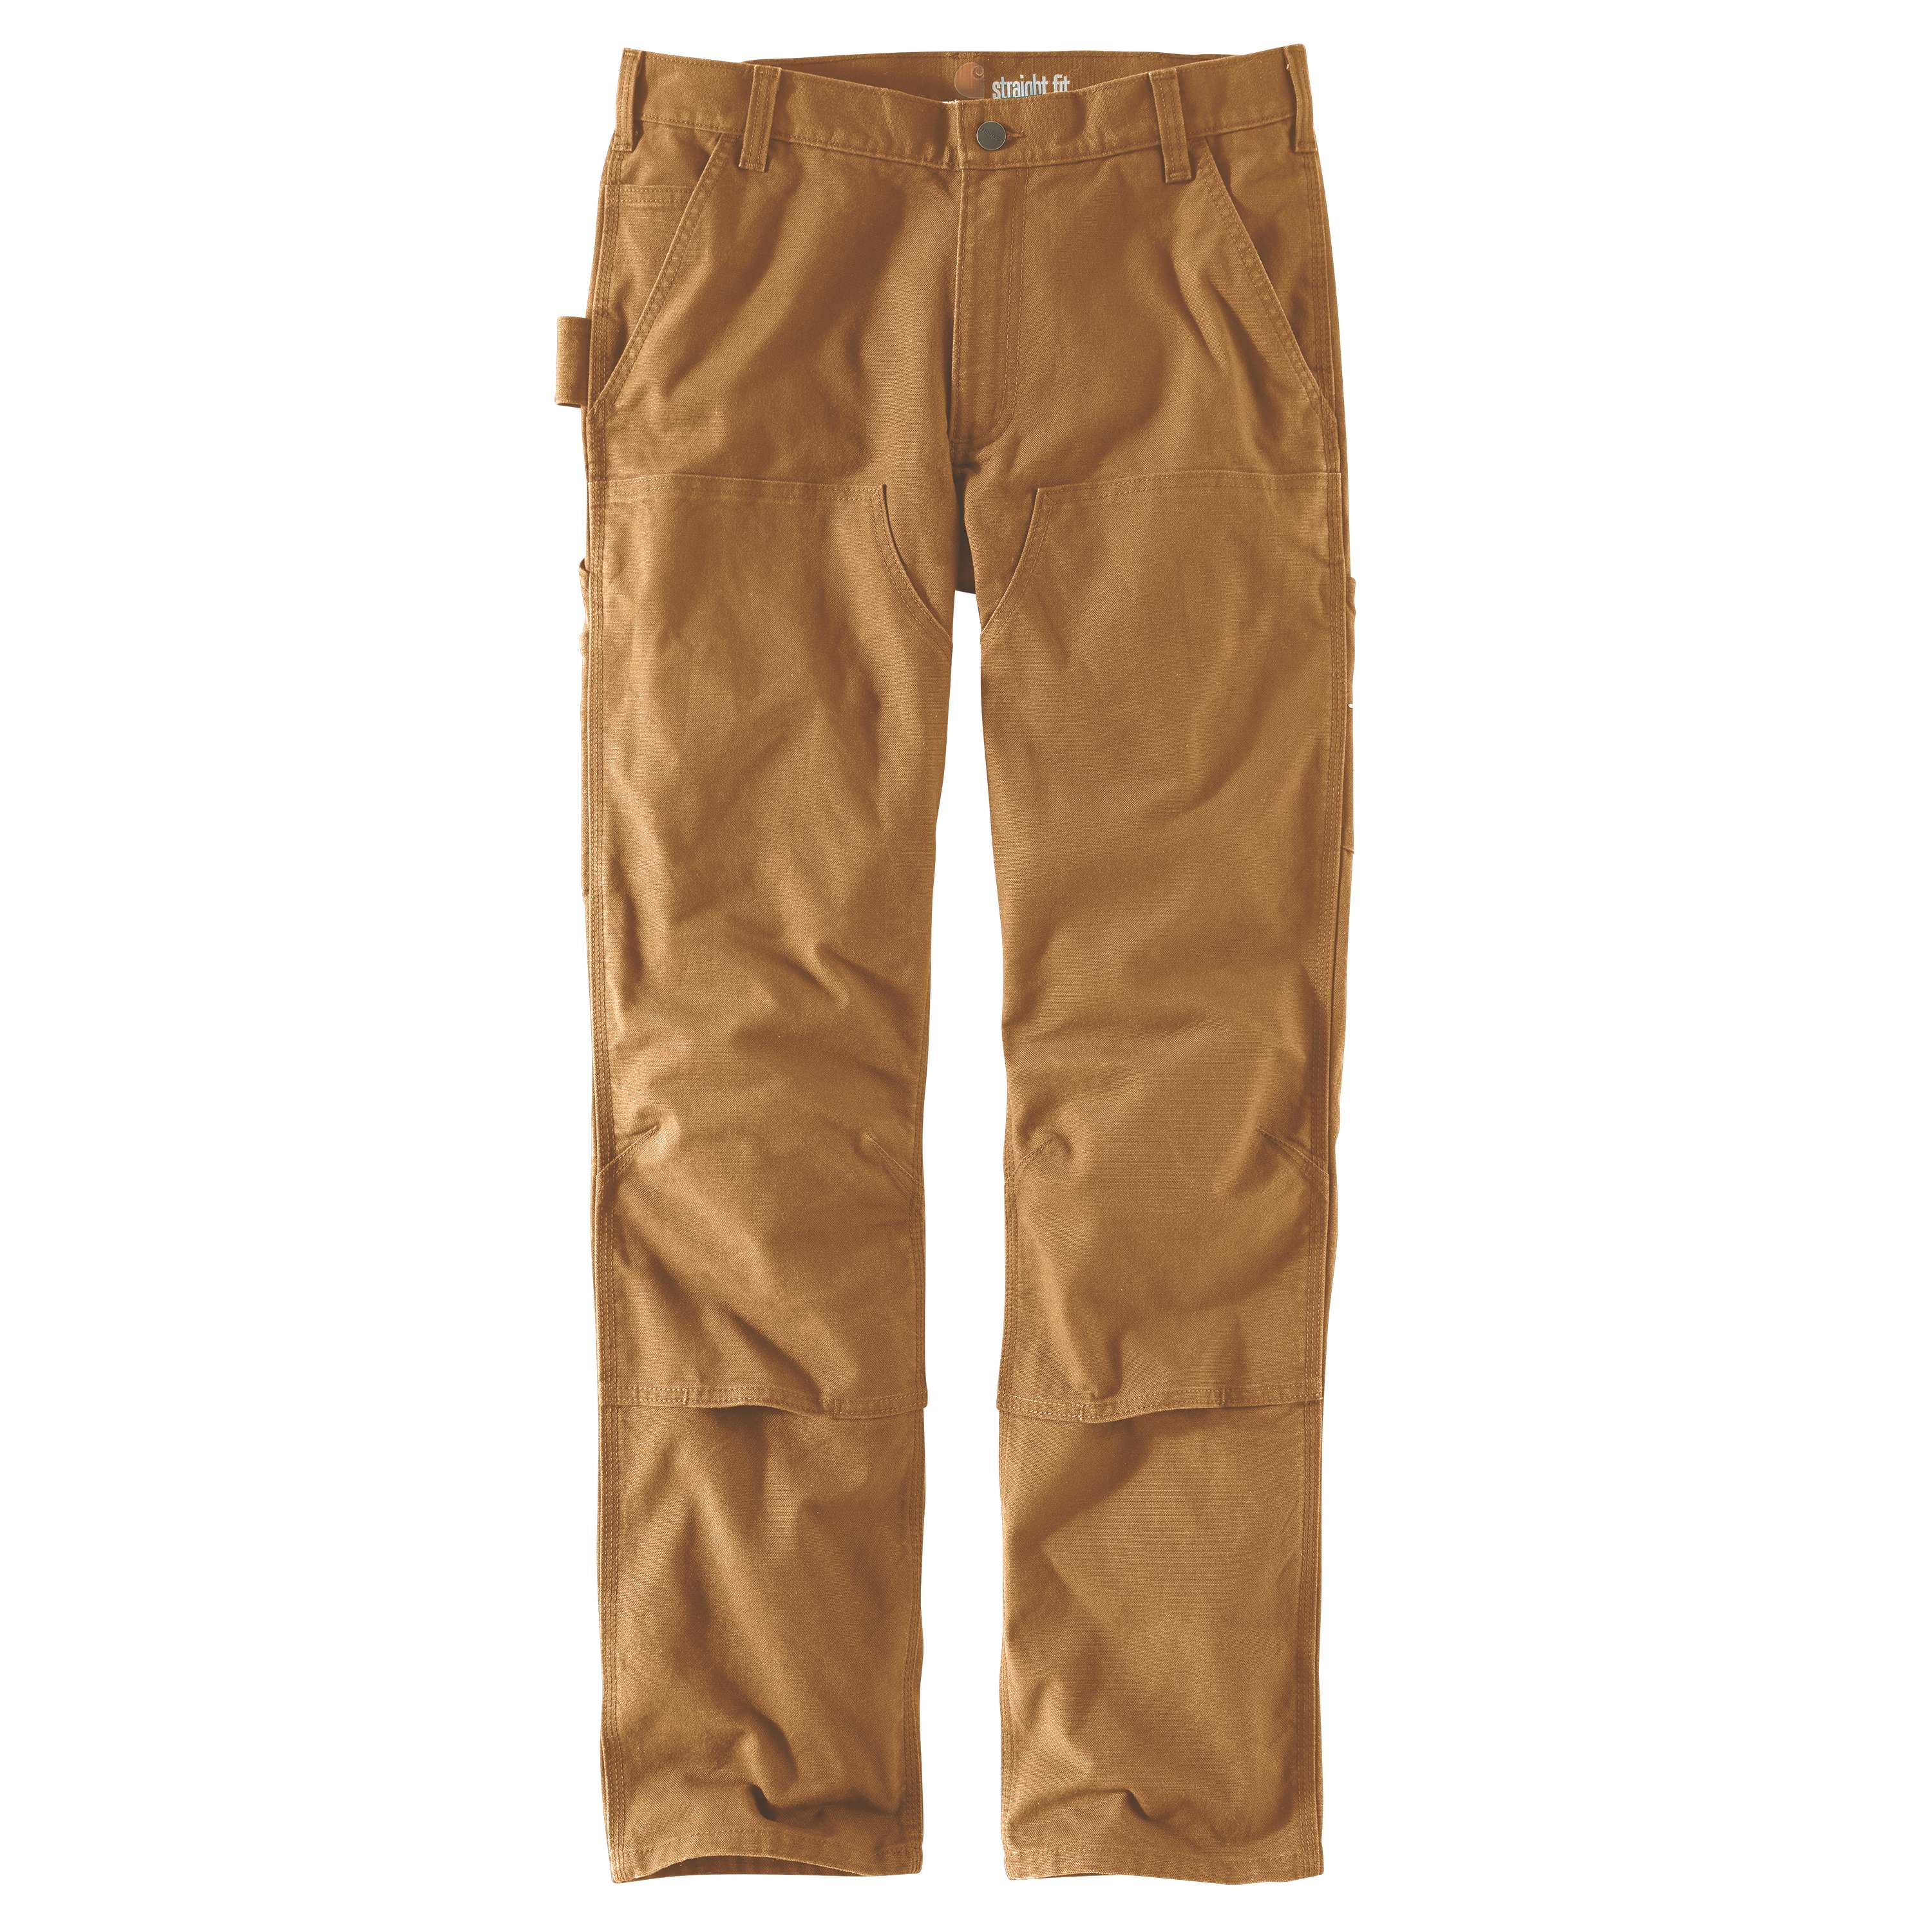 Carhartt Men's Relaxed Fit Carhartt Brown Work Pants (30 X 34)